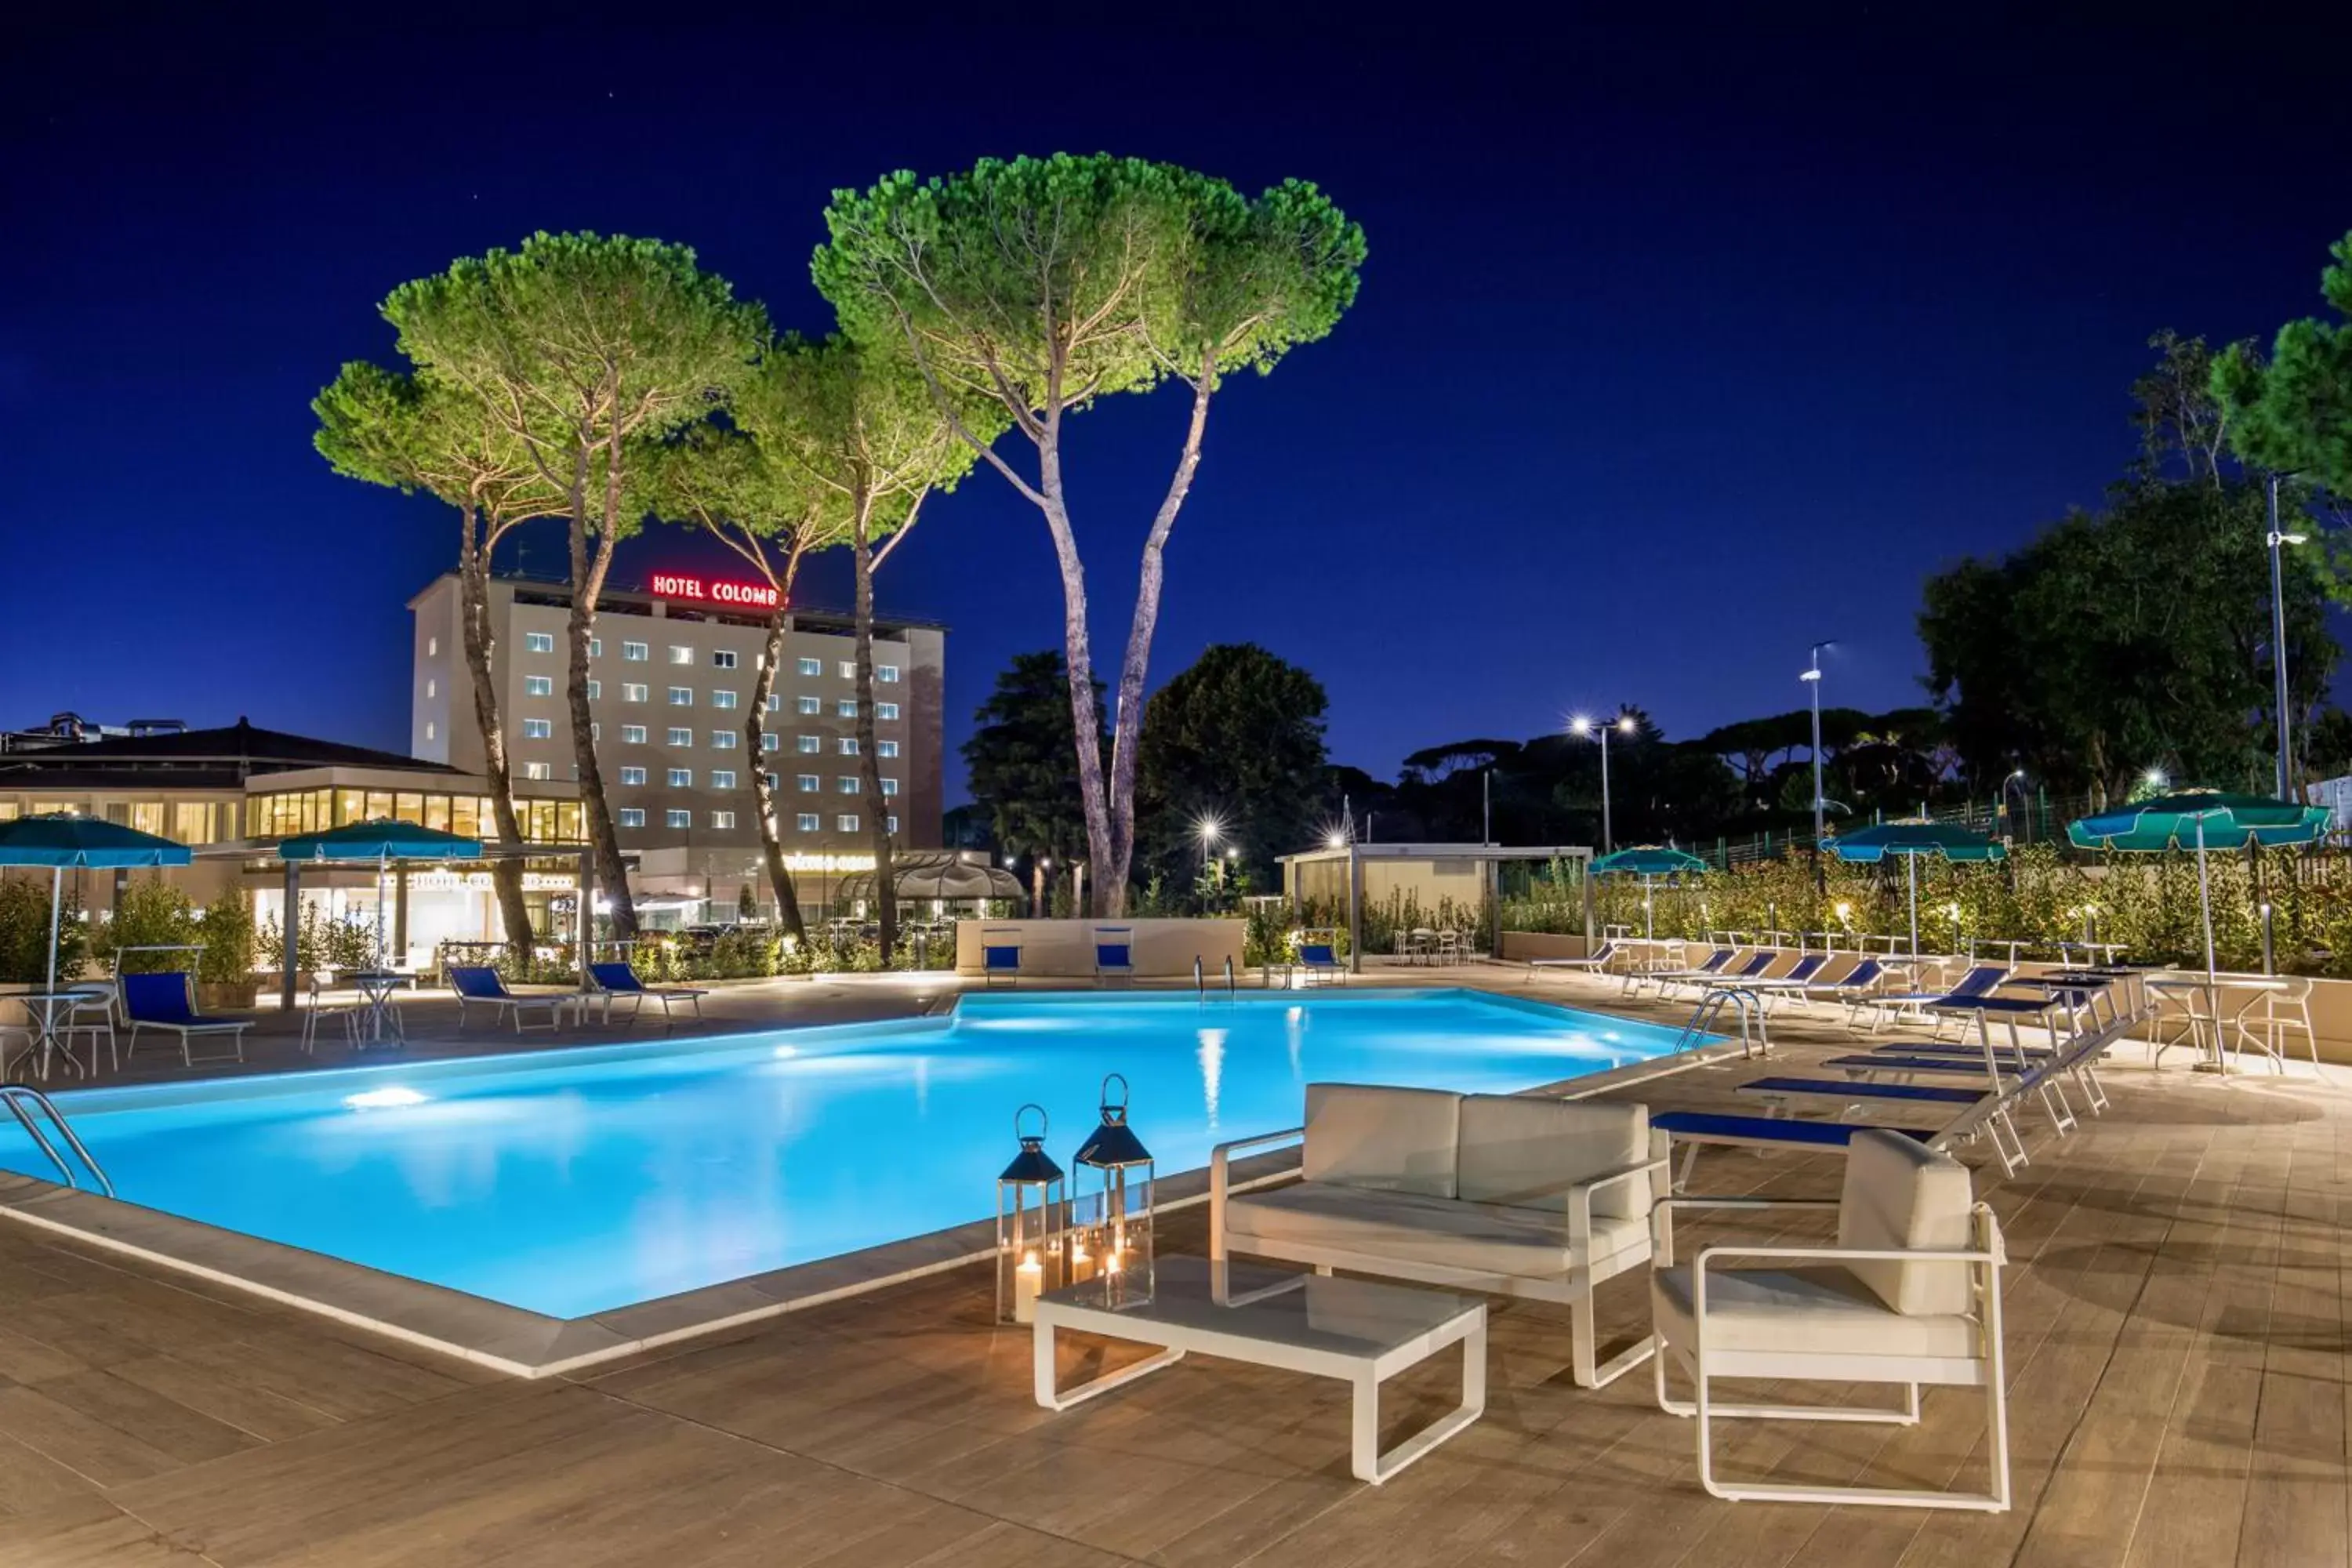 Swimming Pool in Hotel Cristoforo Colombo